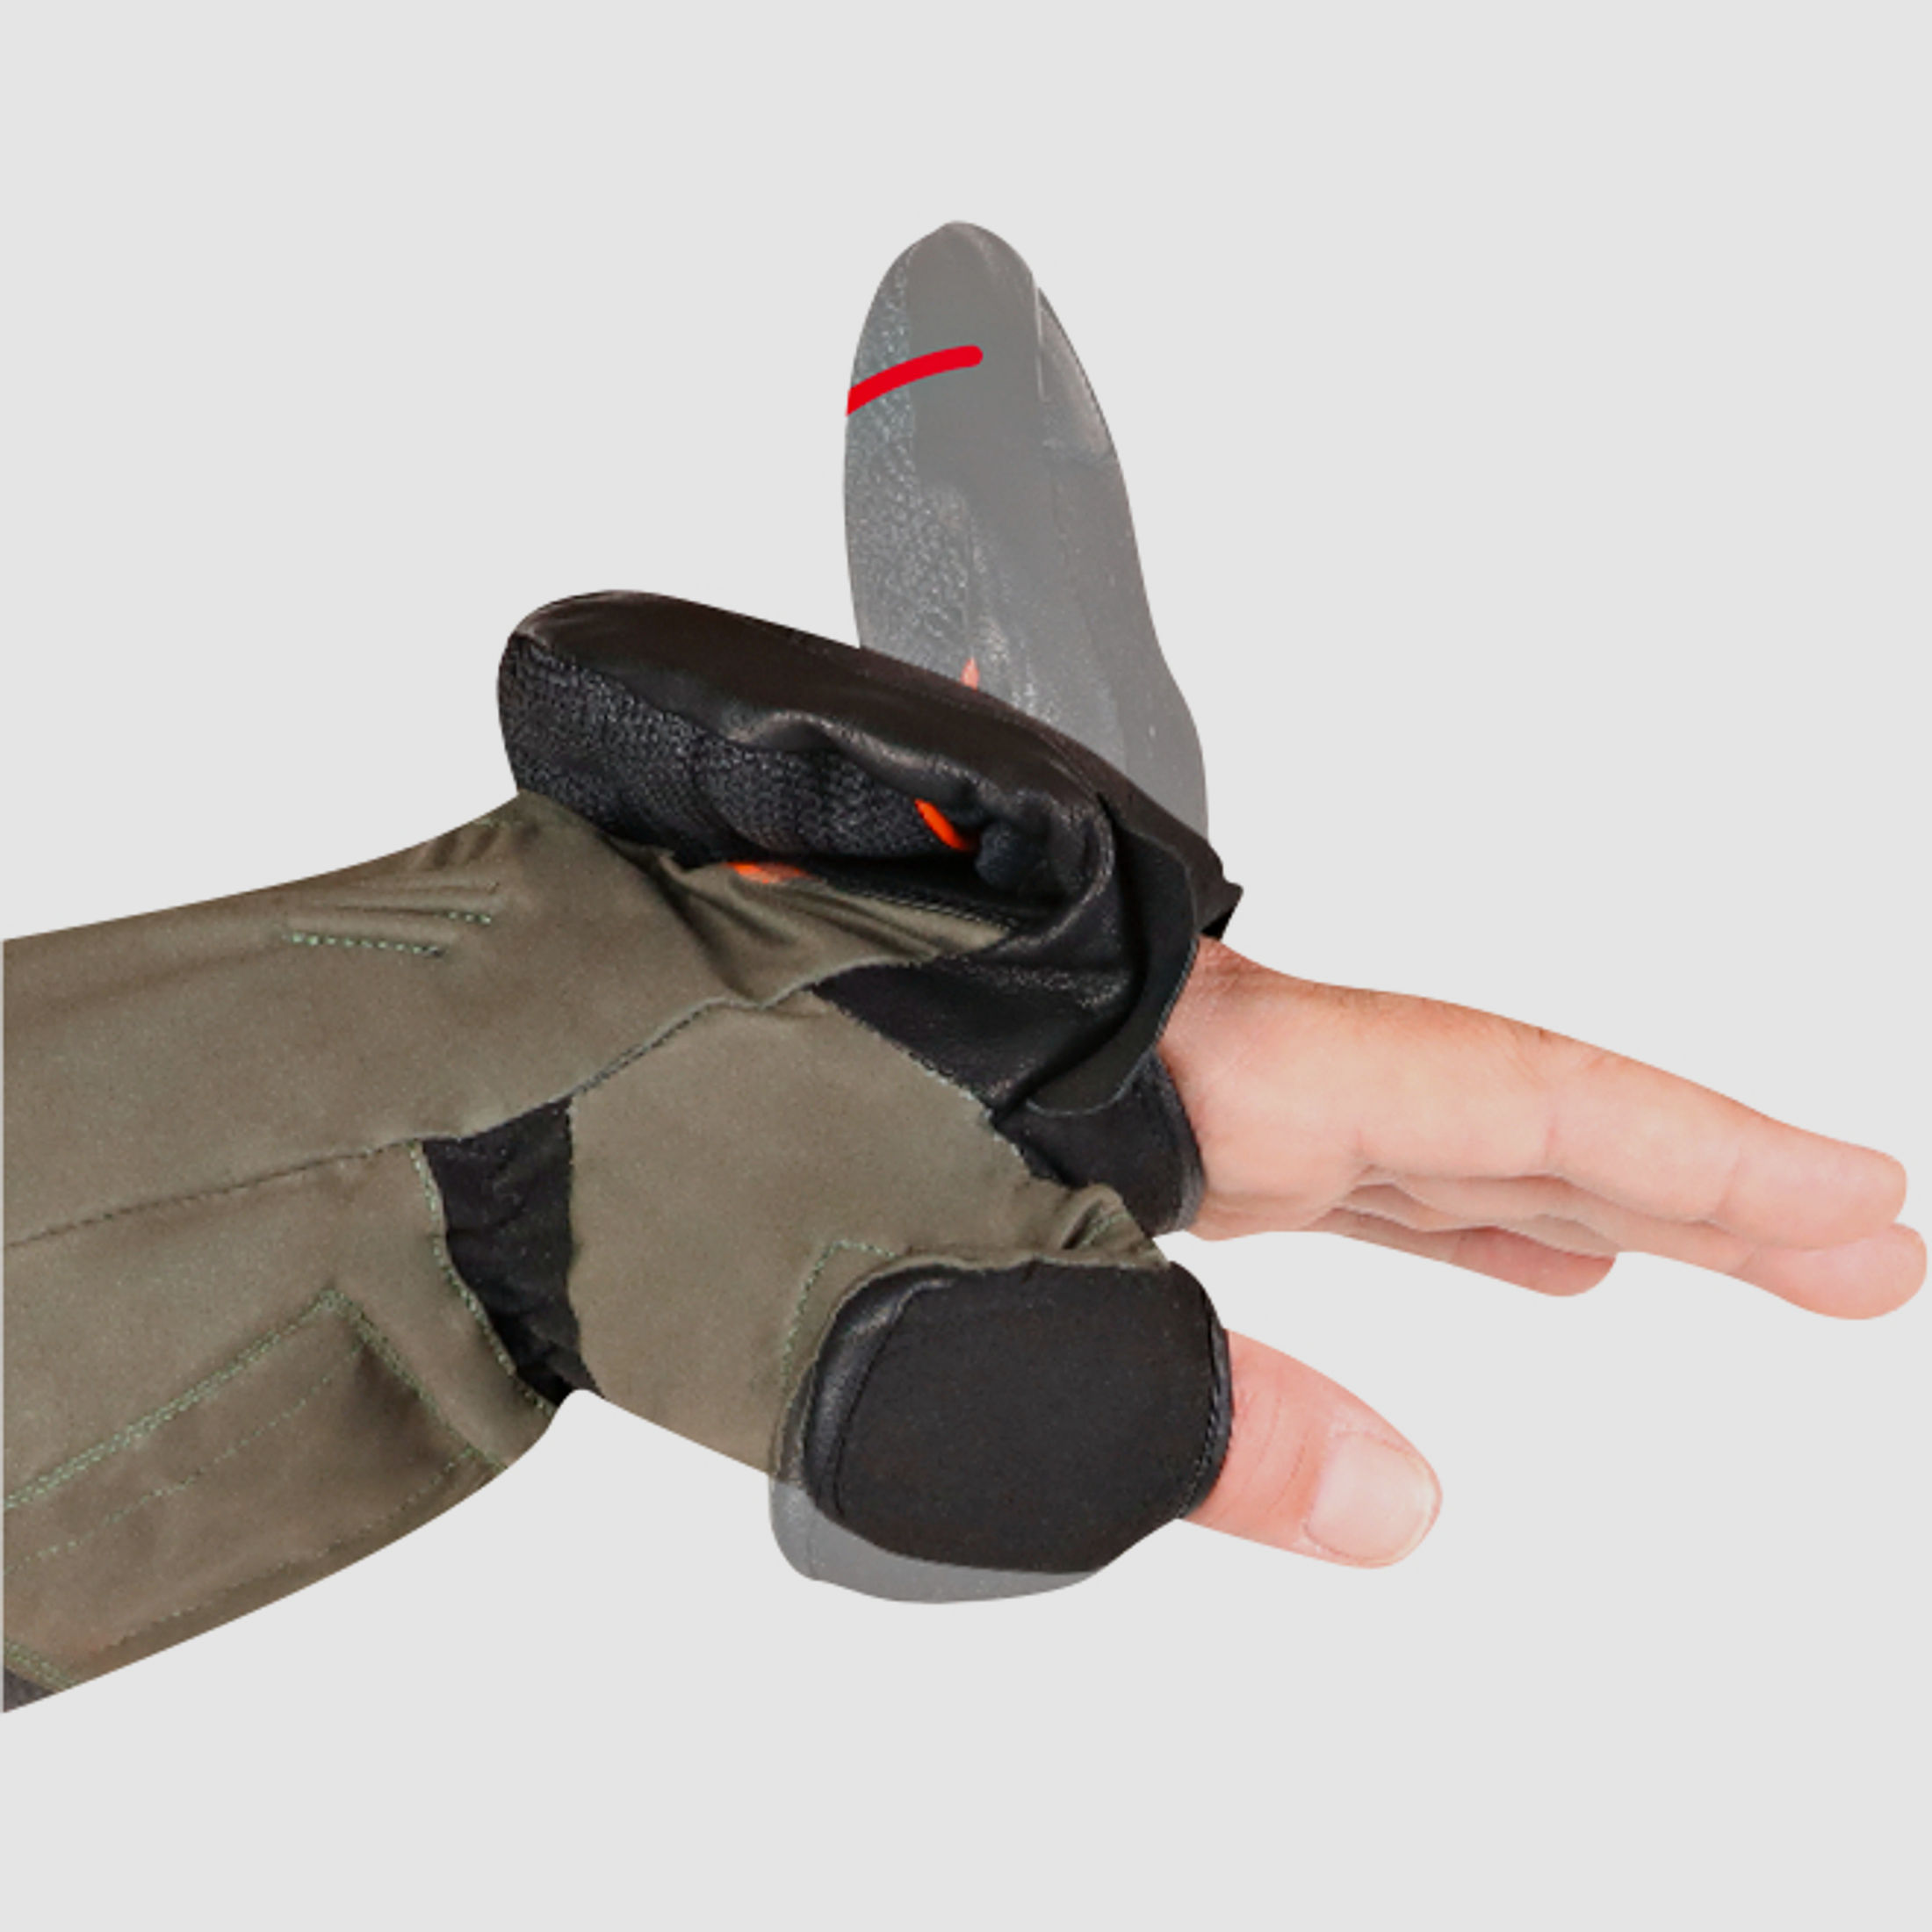 Lenz       Lenz   Heat glove 1.0 finger cap hunting mittens